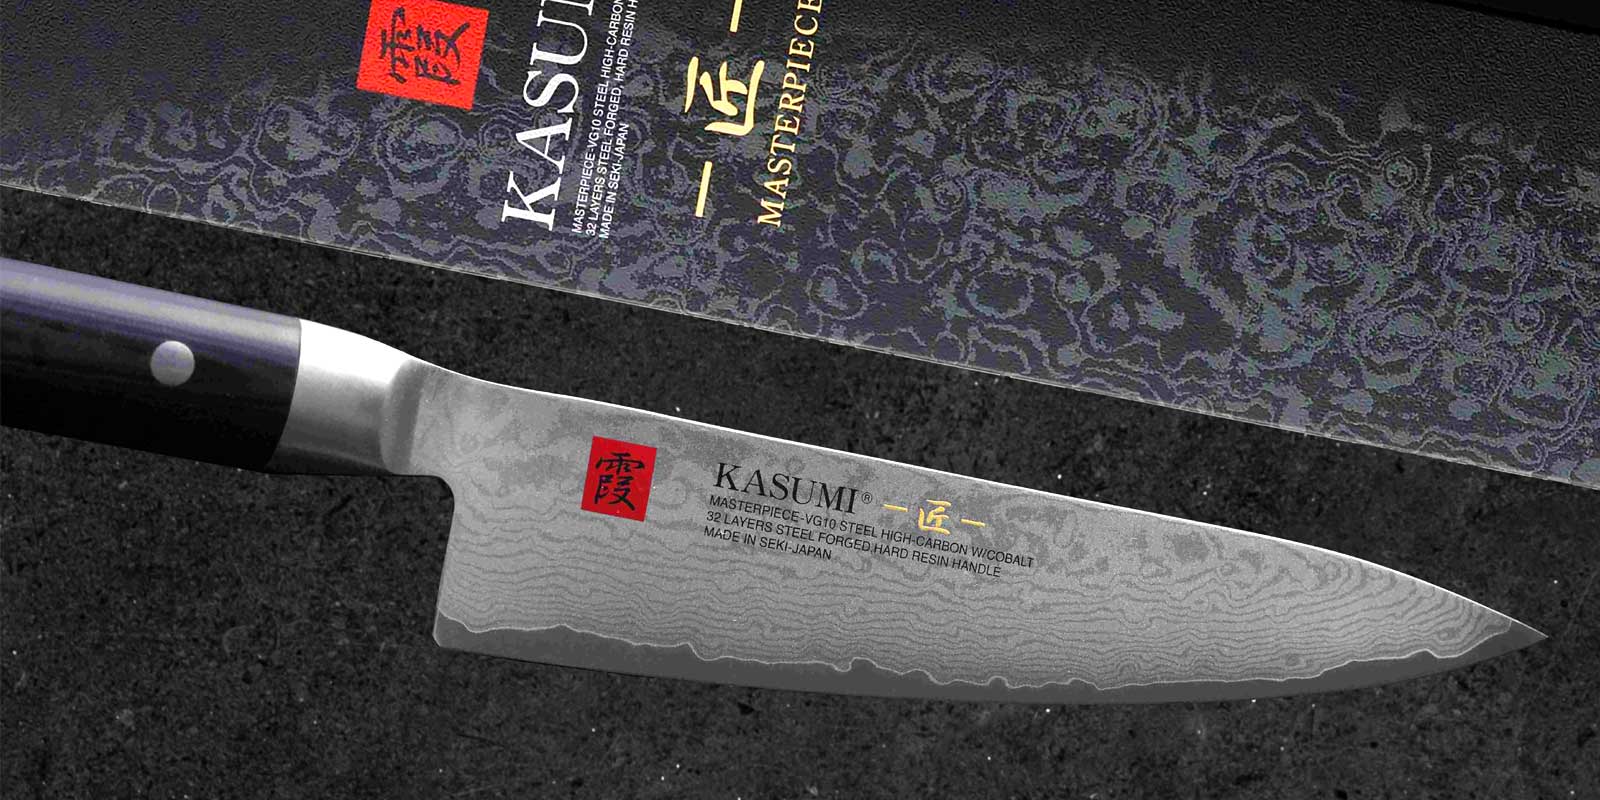 Kasumi Messer Die Mittellage der KASUMI MP Klingen besteht aus bestem japanischen VG10 Stahl - mit Cobalt und höherem Kohlenstoffgehalt, der ausschließlich für die Fertigung von sehr hochwertigen Küchenmessern entwickelt wurde. Nach dem Schmieden werden die Klingen erneut auf etwa 800 °C erwärmt, anschließend schnell wieder abgekühlt und so auf etwa 59-60° C Rockwell gehärtet. Die Härte von 59-60 HRC gilt nicht nur in Japan als optimale Härte für Küchenmesser. Sie ermöglicht bei sehr guter Schärfe eine sehr lange Standzeit der Schneide (Schnitthaltigkeit - wird nicht so schnell stumpf), ermöglicht jedoch gleichermaßen ein leichtes Nachschärfen mit den SUMIKAMA Schleifsteinen.